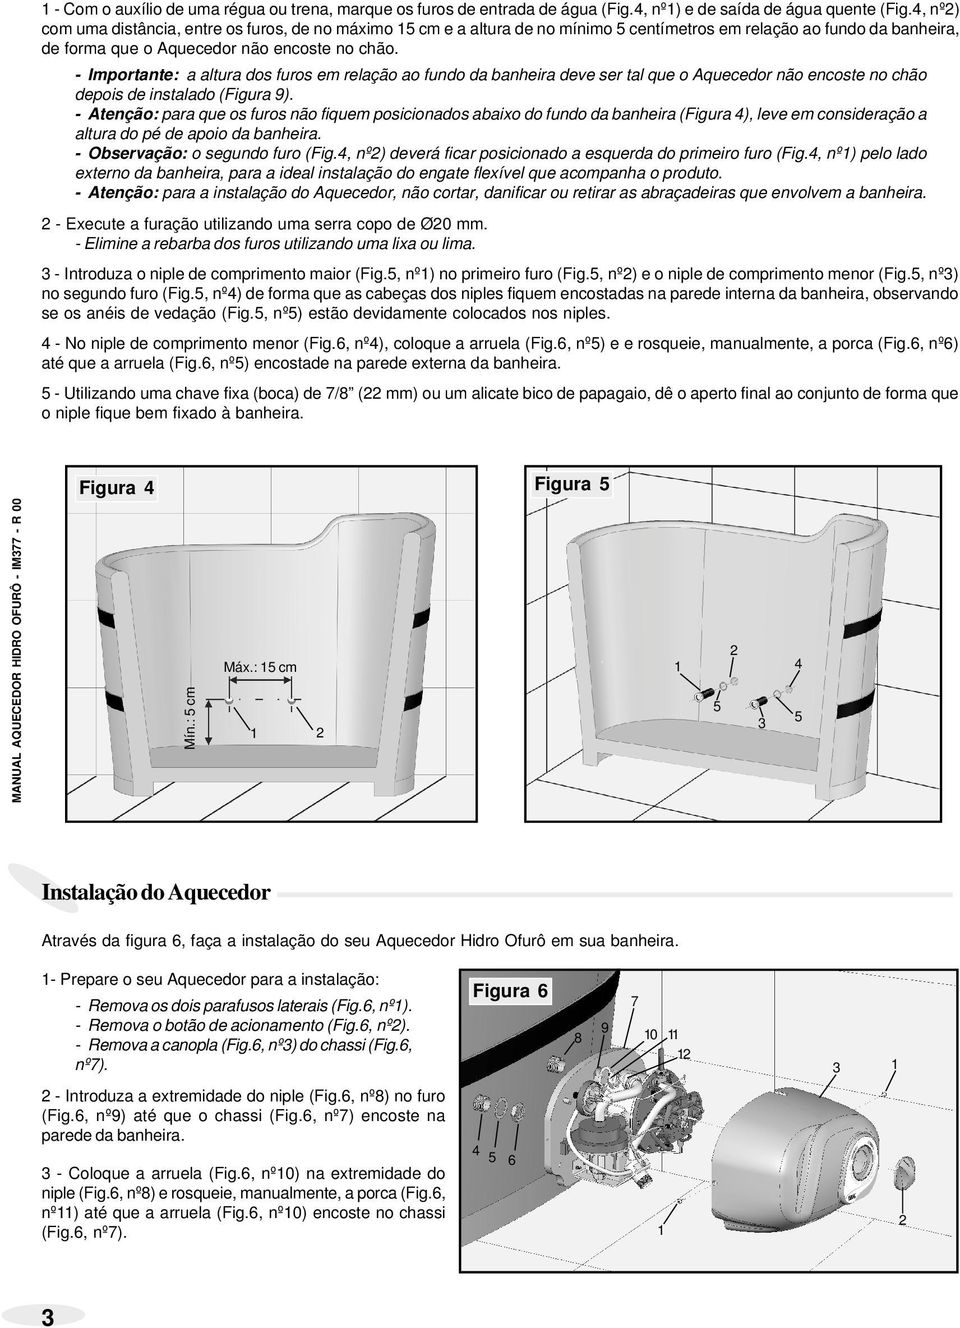 - Importante: a altura dos furos em relação ao fundo da banheira ve ser tal que o Aquecedor não encoste chão pois instalado (Figura 9).